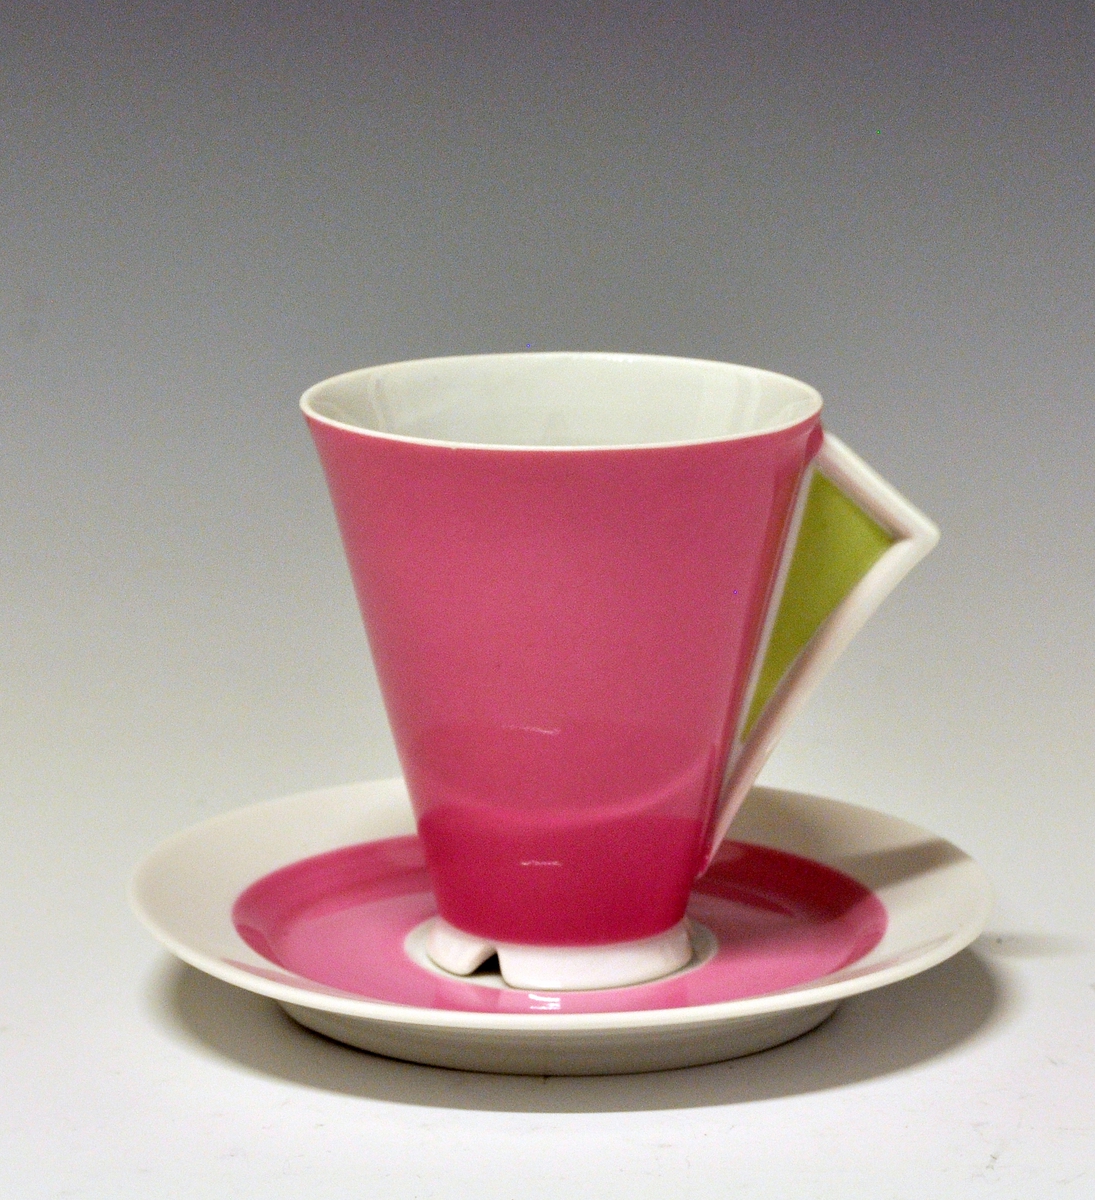 Kaffeskål av porselen, dekorert med et rosa bånd innerst på fanen.
Modell: Style